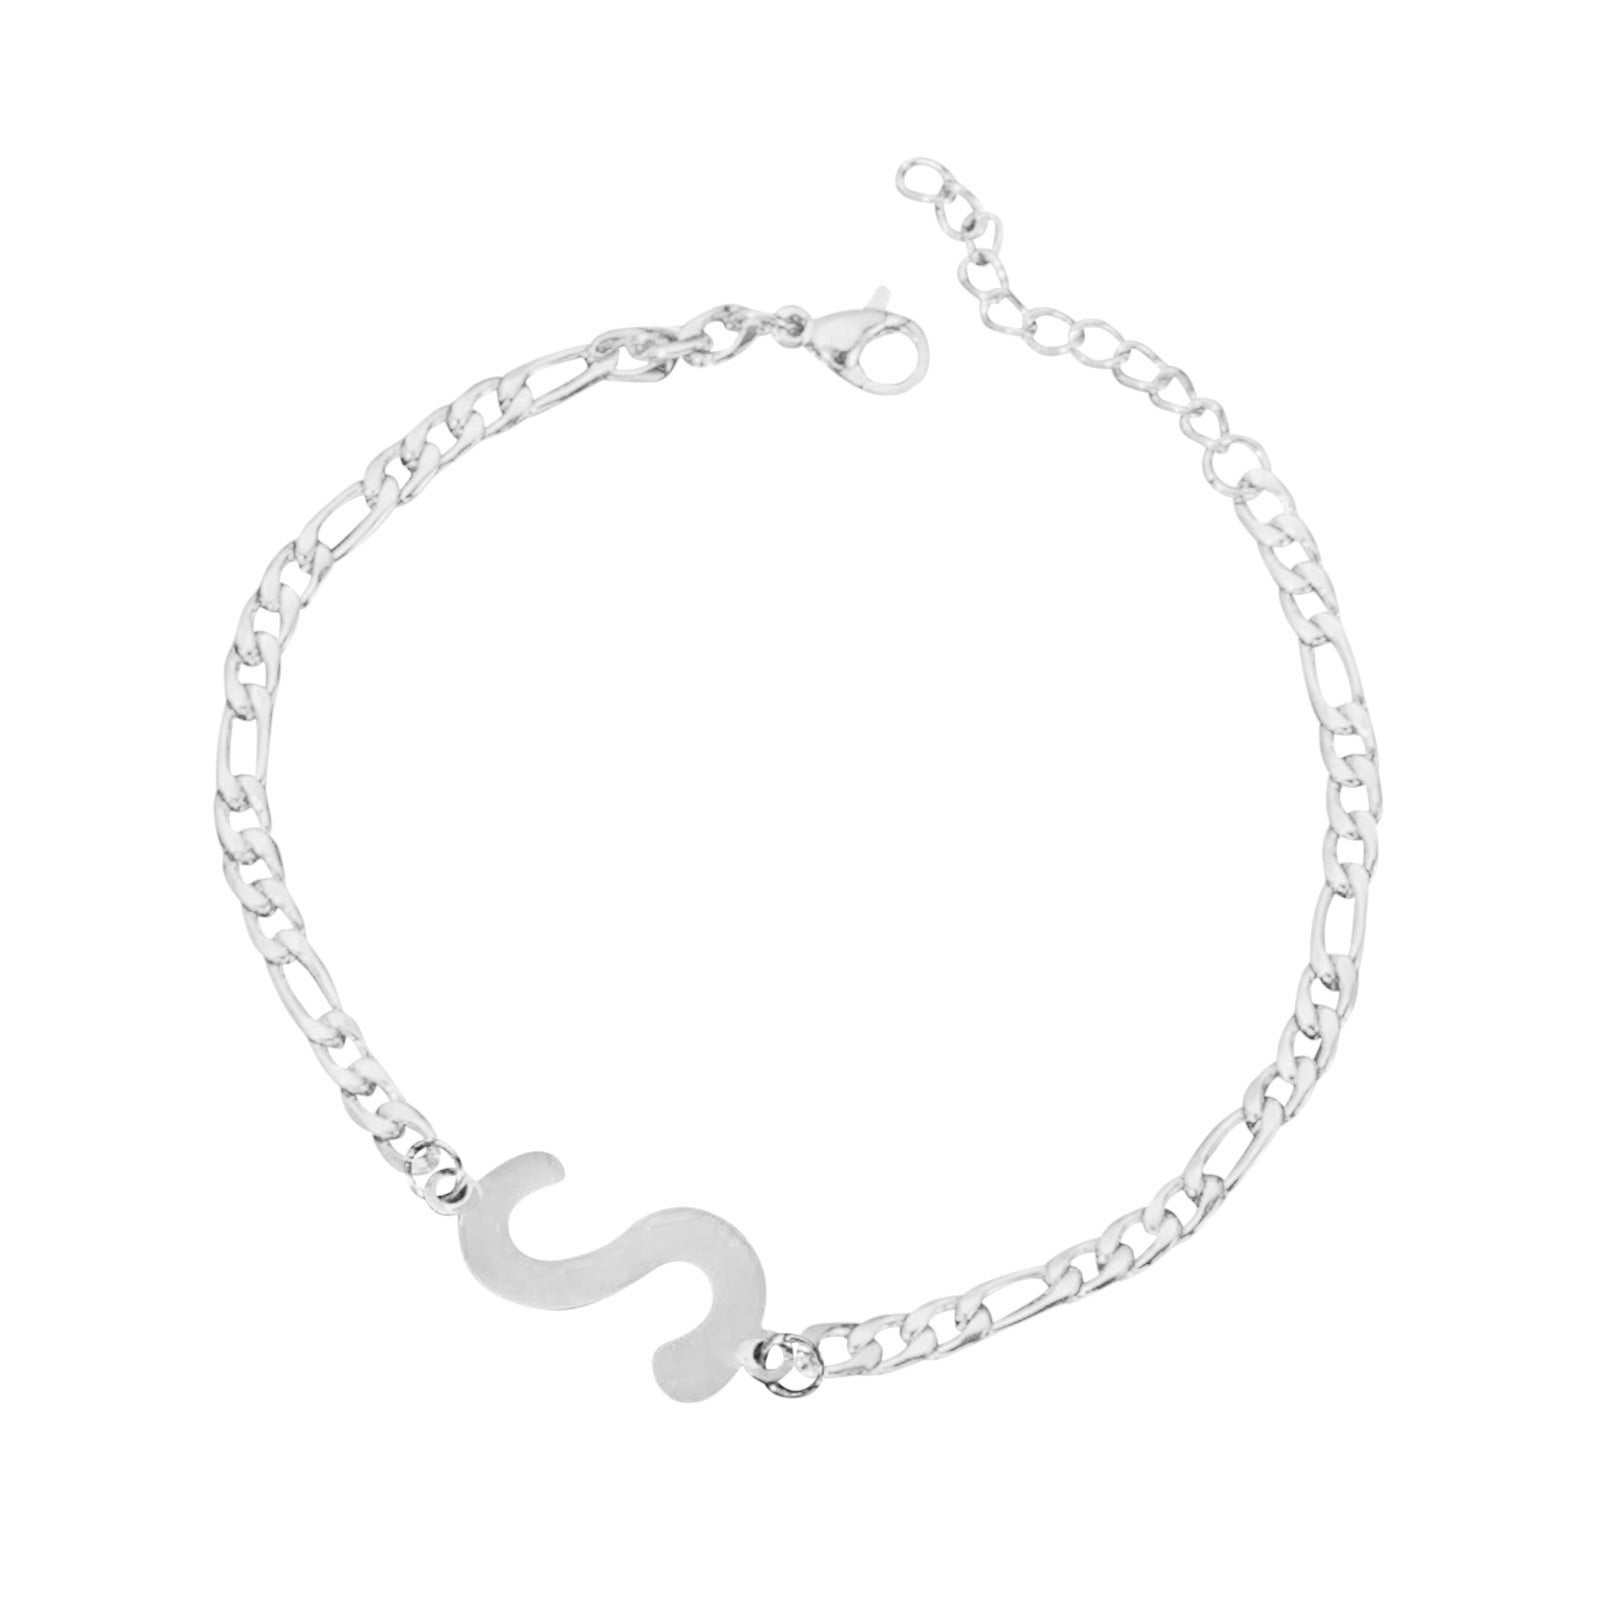 Heart Charm Sterling Silver Bracelet -Delicate Initial Heart Bracelet -  Nadin Art Design - Personalized Jewelry